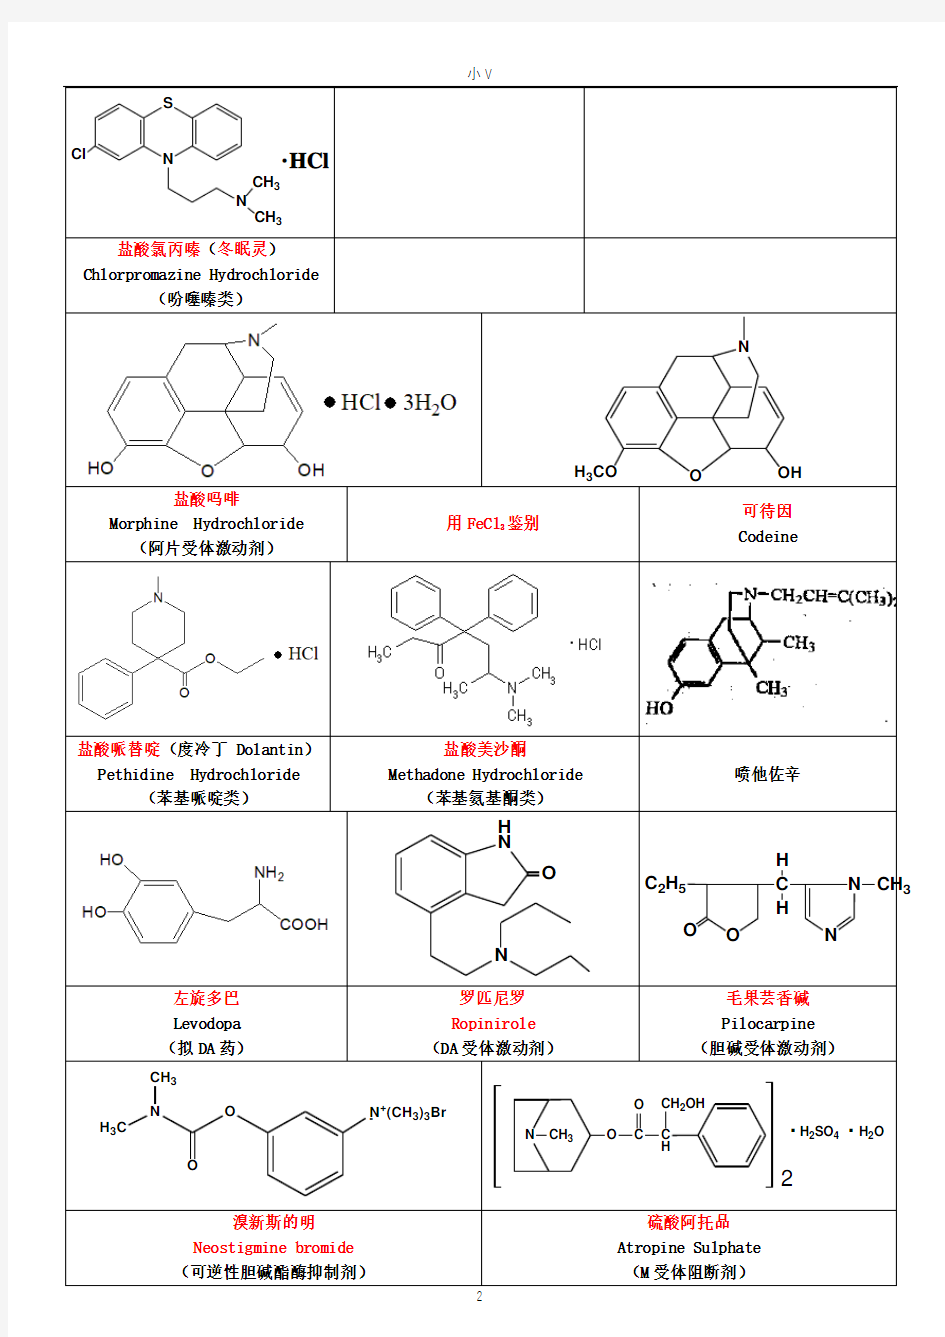 药物化学重点药物化学结构及类型总结归纳